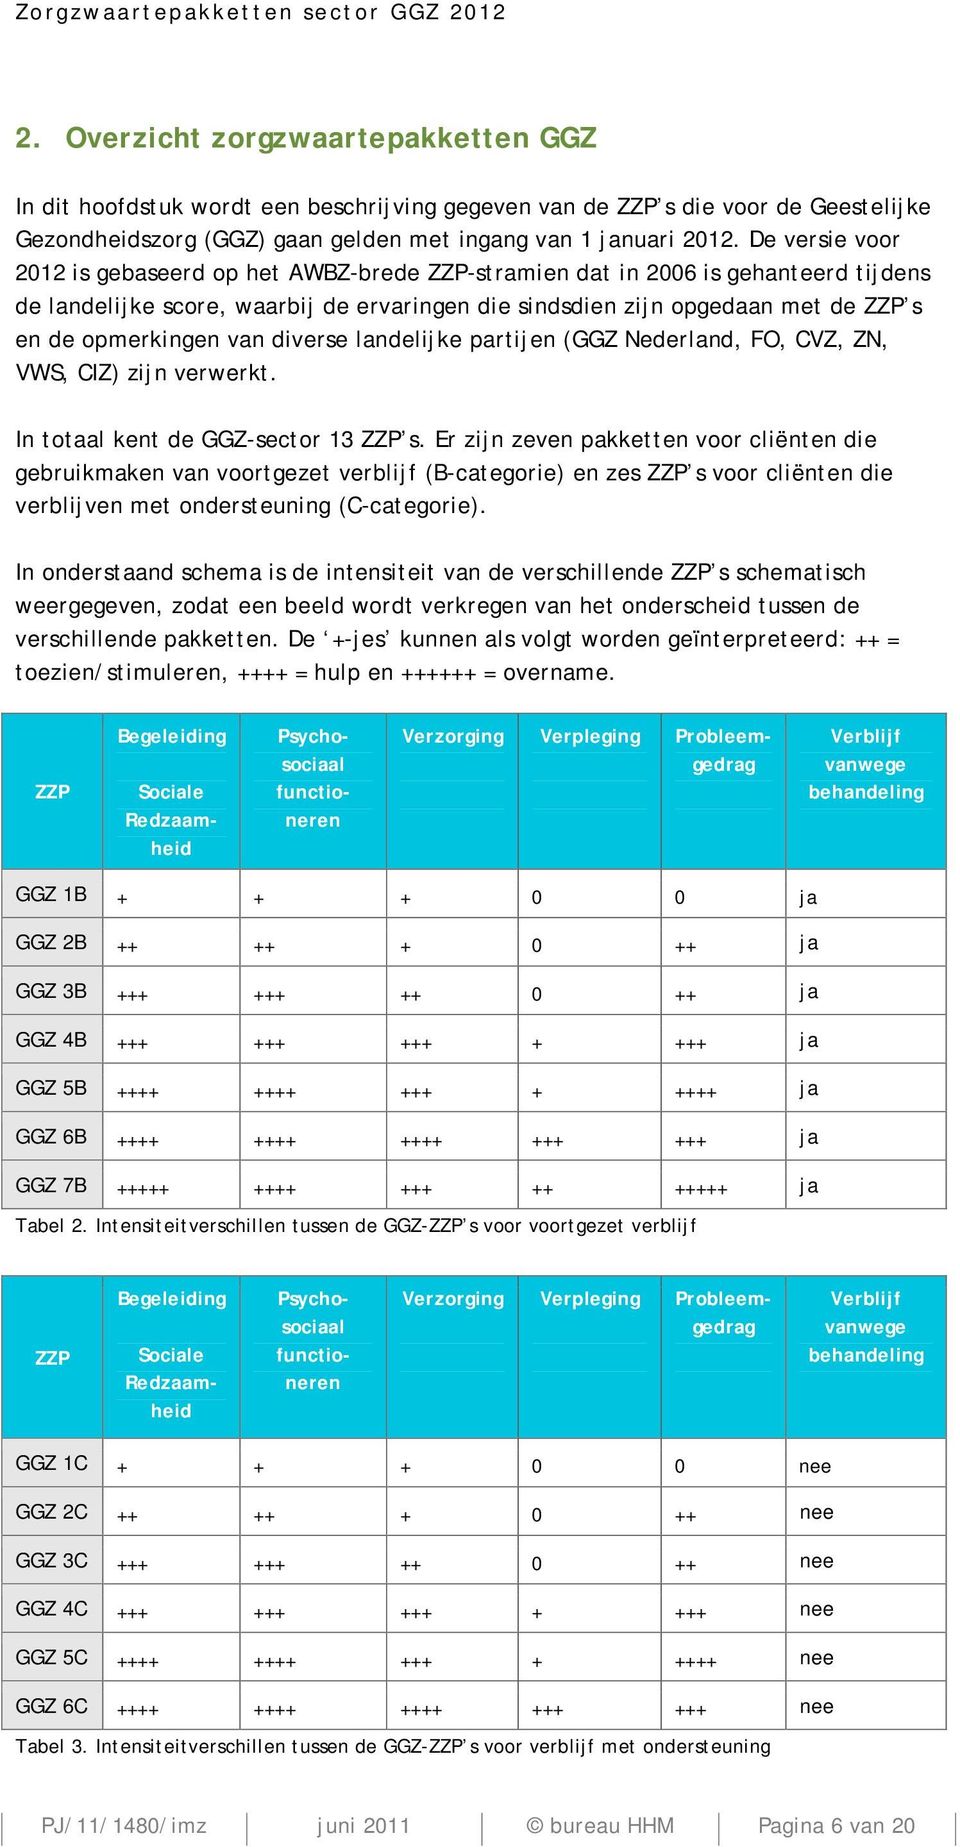 van diverse landelijke partijen (GGZ Nederland, FO, CVZ, ZN, VWS, CIZ) zijn verwerkt. In totaal kent de GGZ-sector 13 ZZP s.